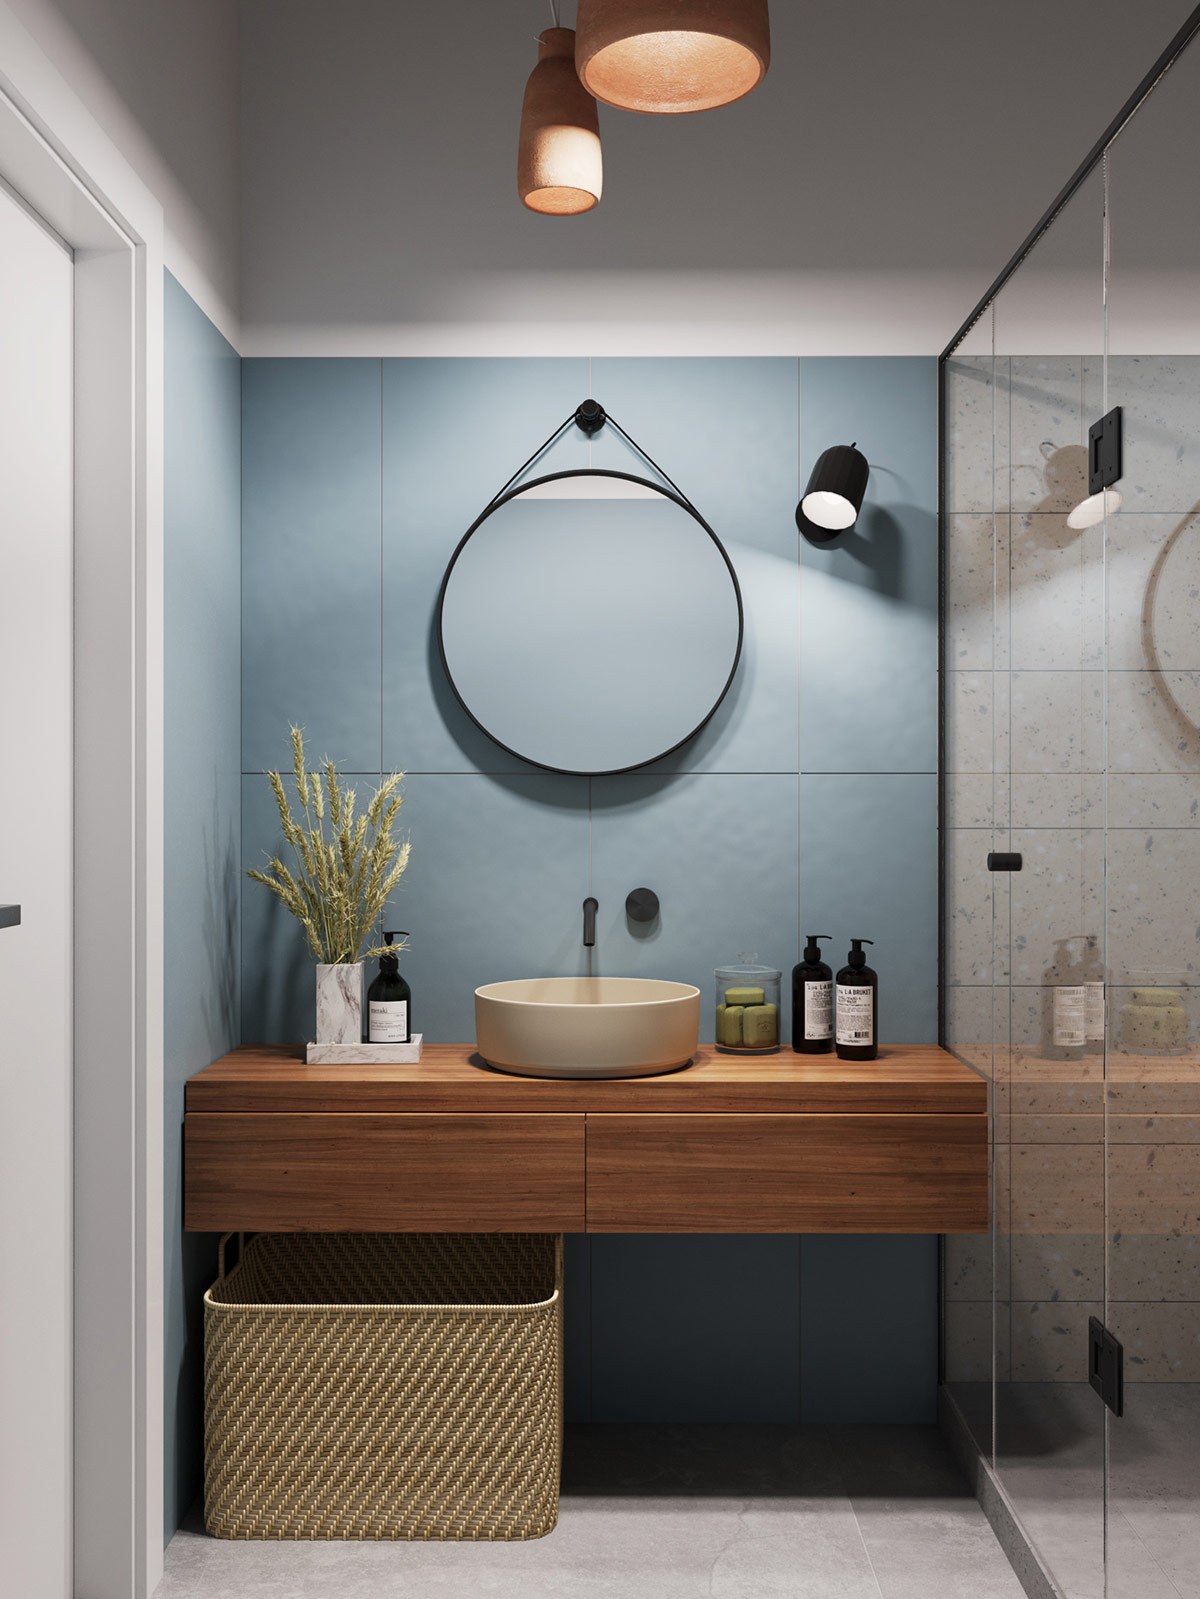 Thiết kế nội thất chung cư nhà vệ sinh phong cách tối giản